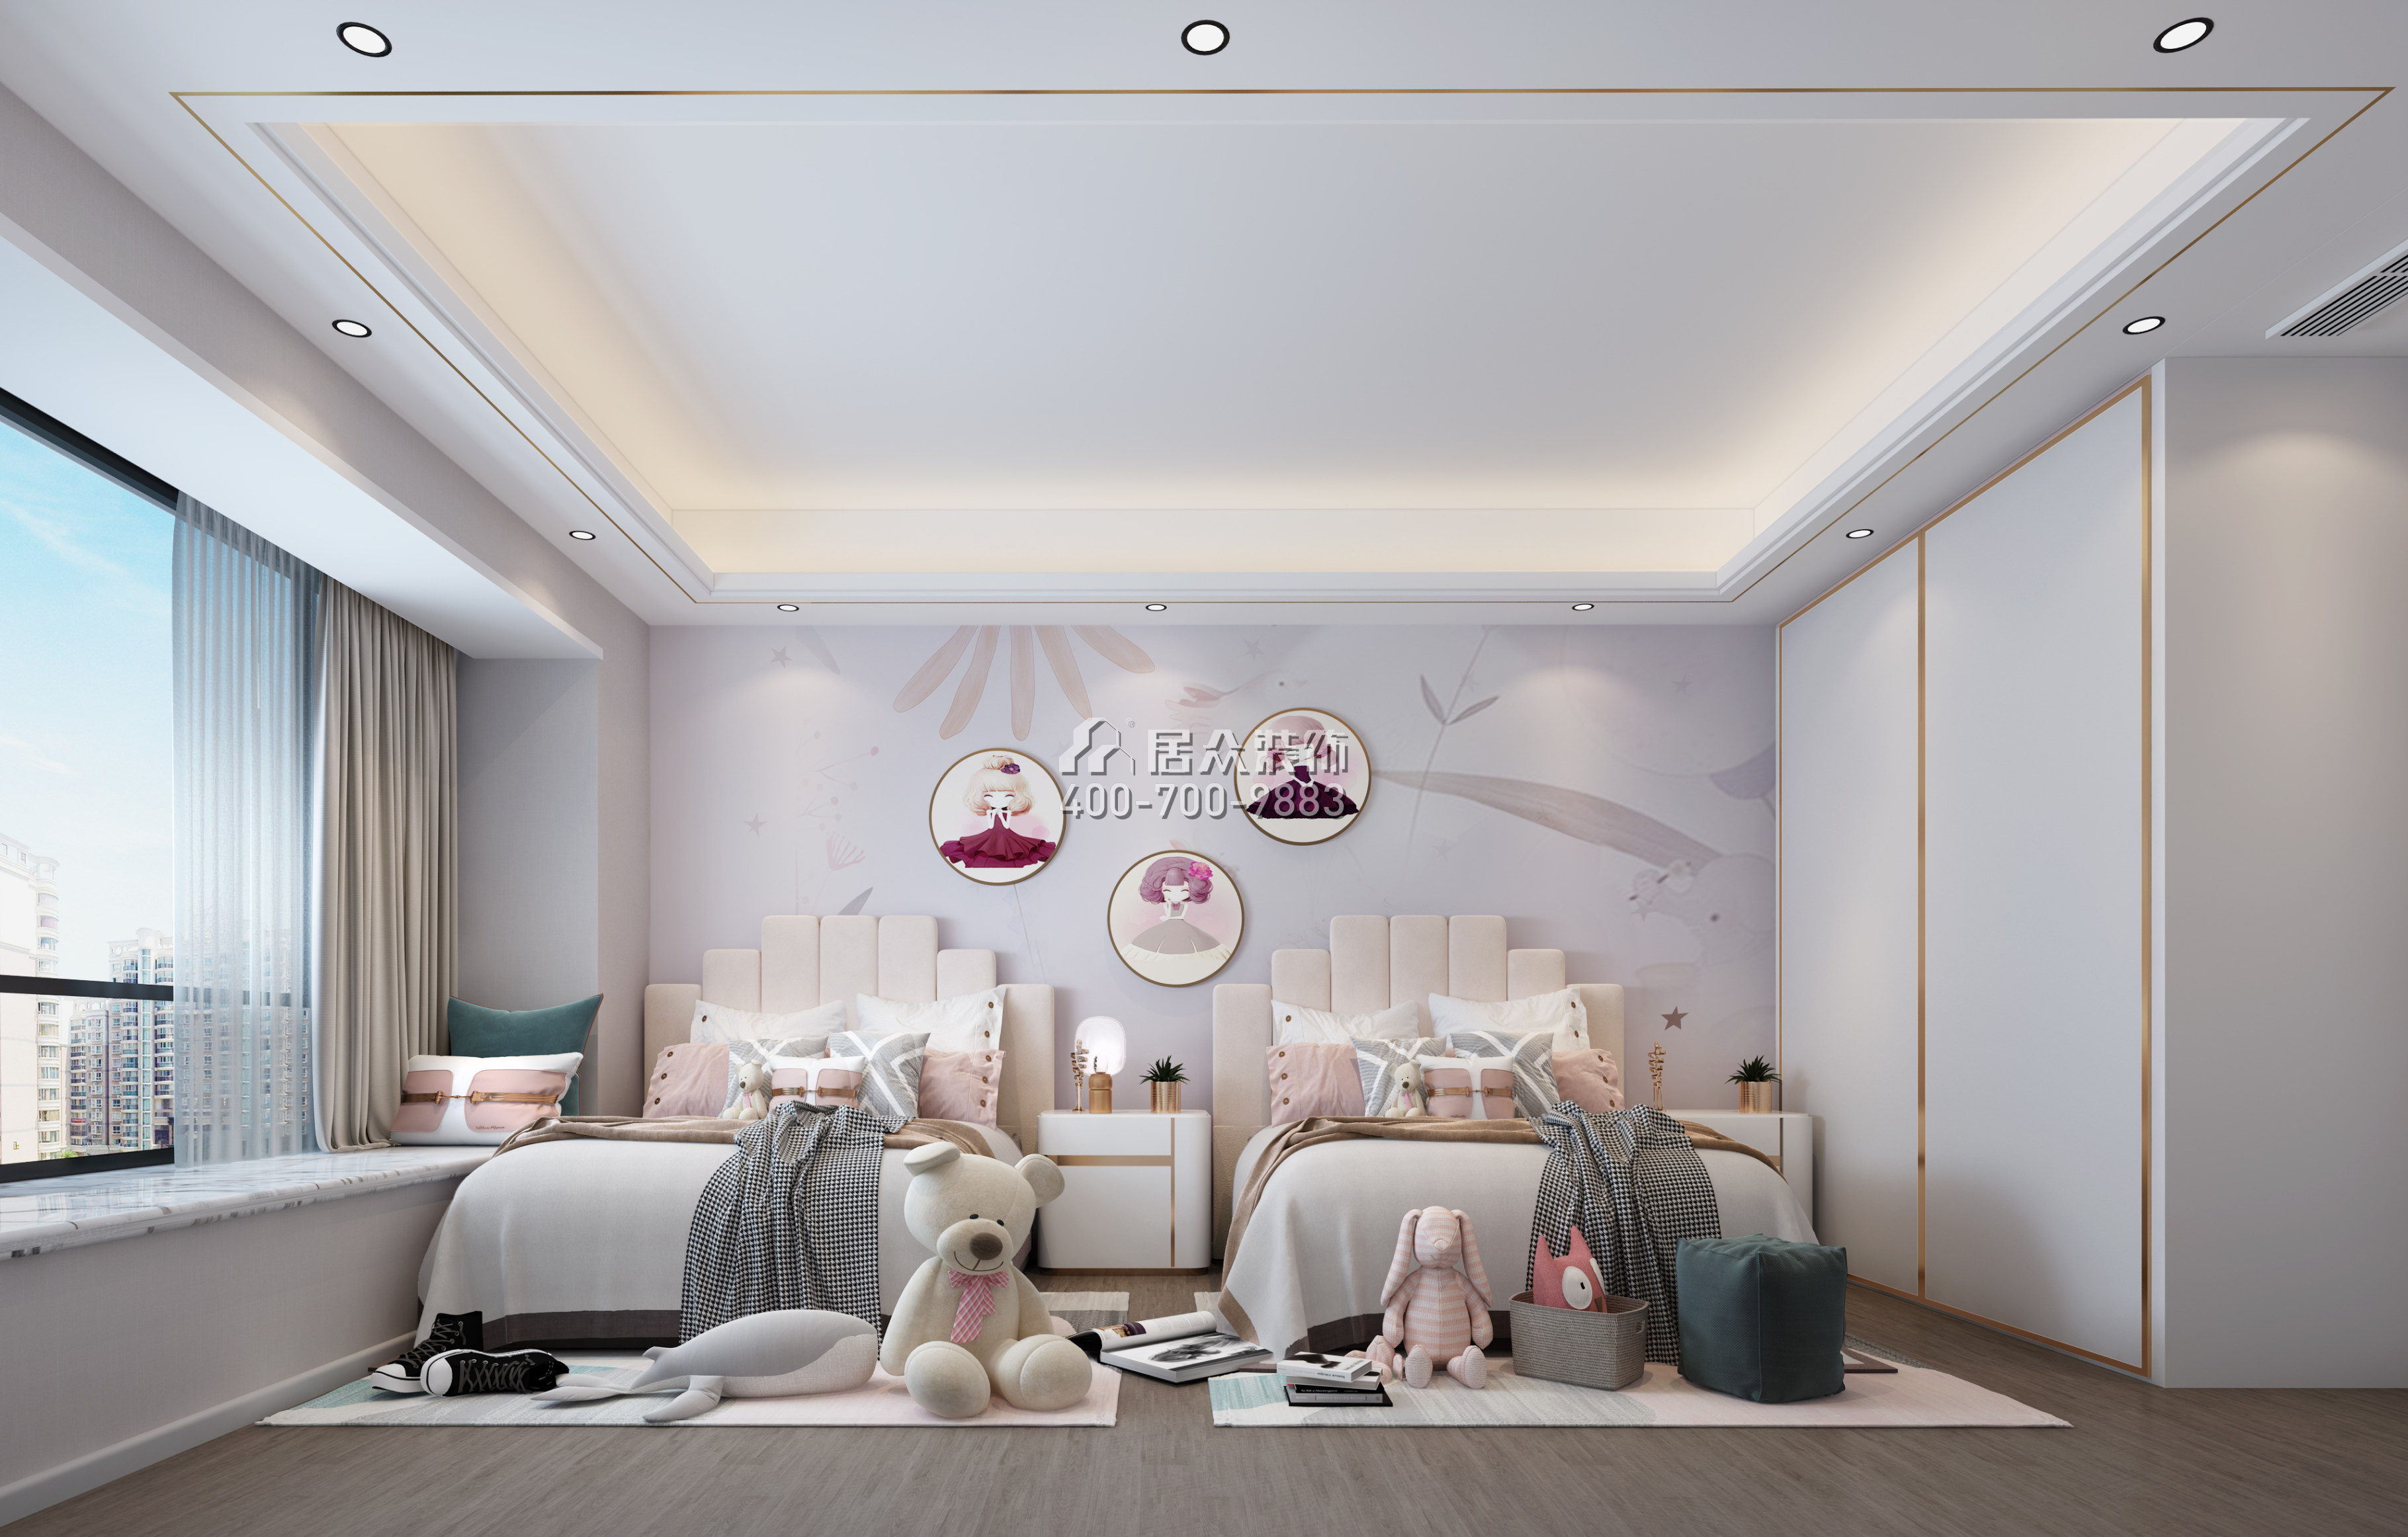 中信红树湾-三期300平方米现代简约风格平层户型卧室装修效果图